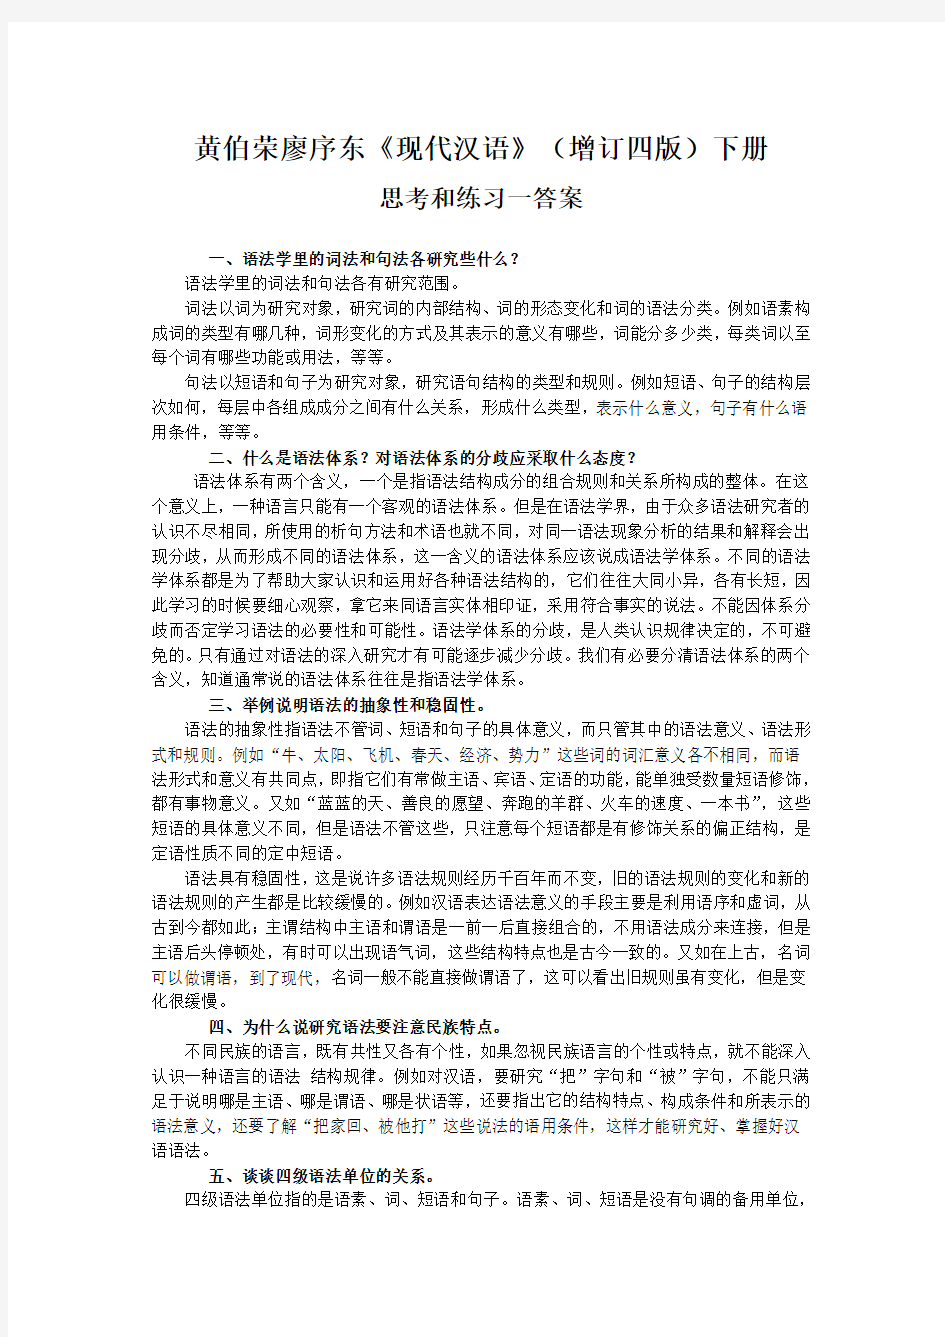 黄廖《现代汉语》(增订四版)下册第五章语法思考和练习一答案